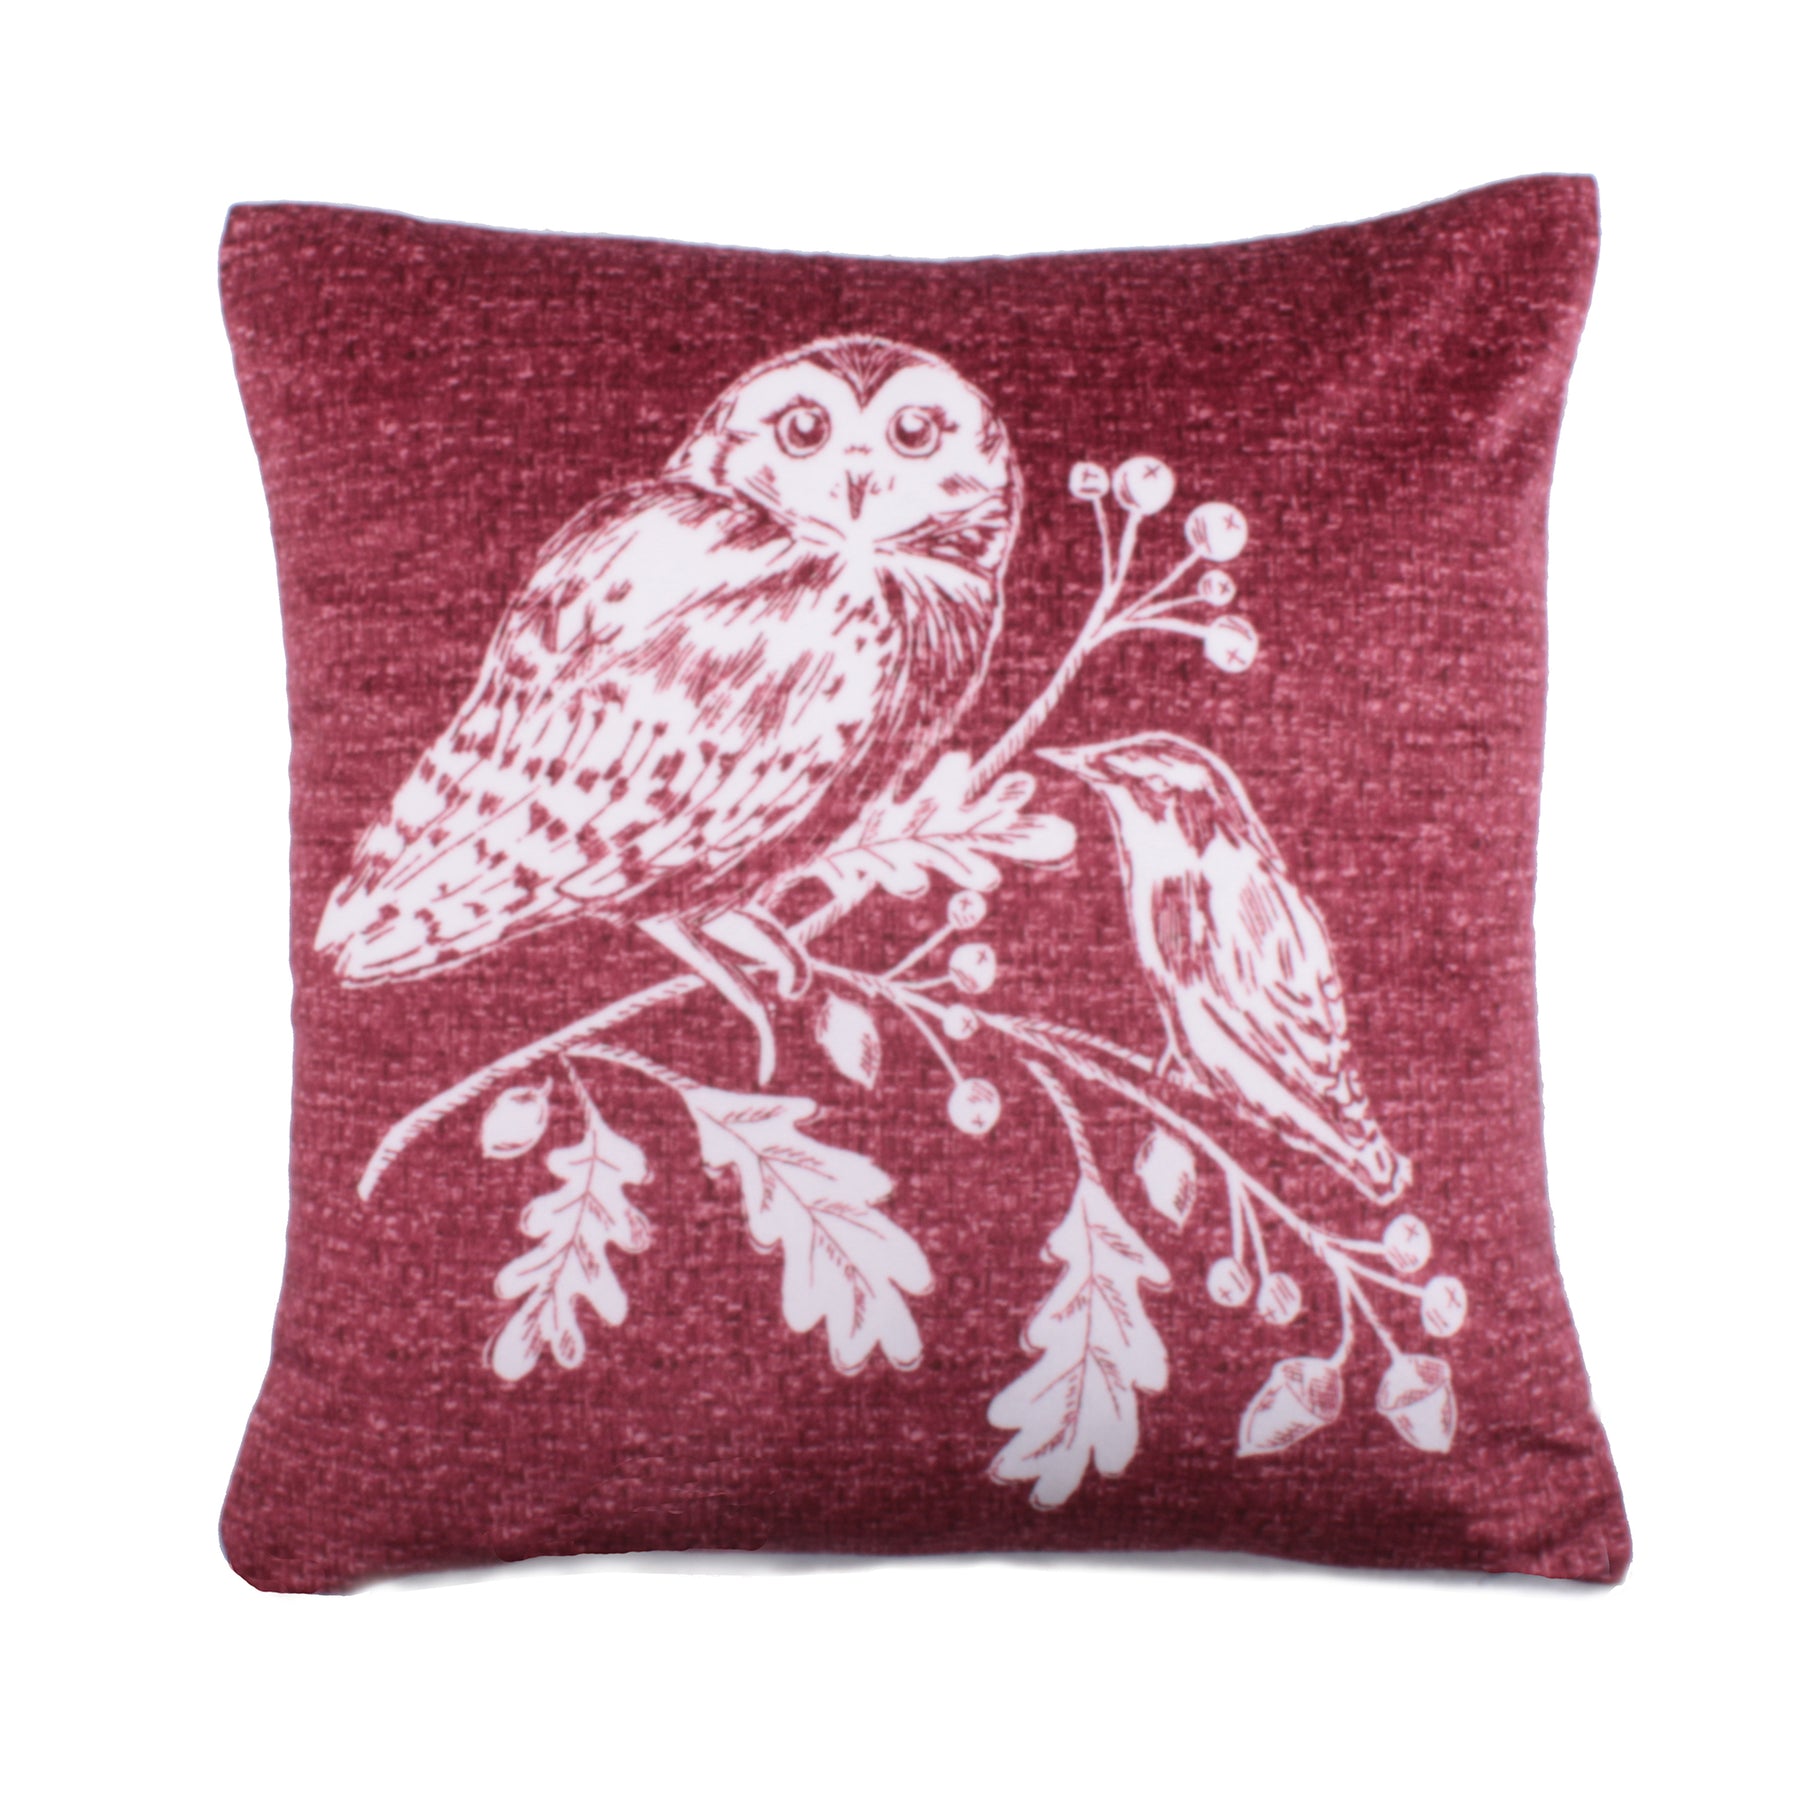 Woodland Owls 43cm x 43cm Filled Cushion Red